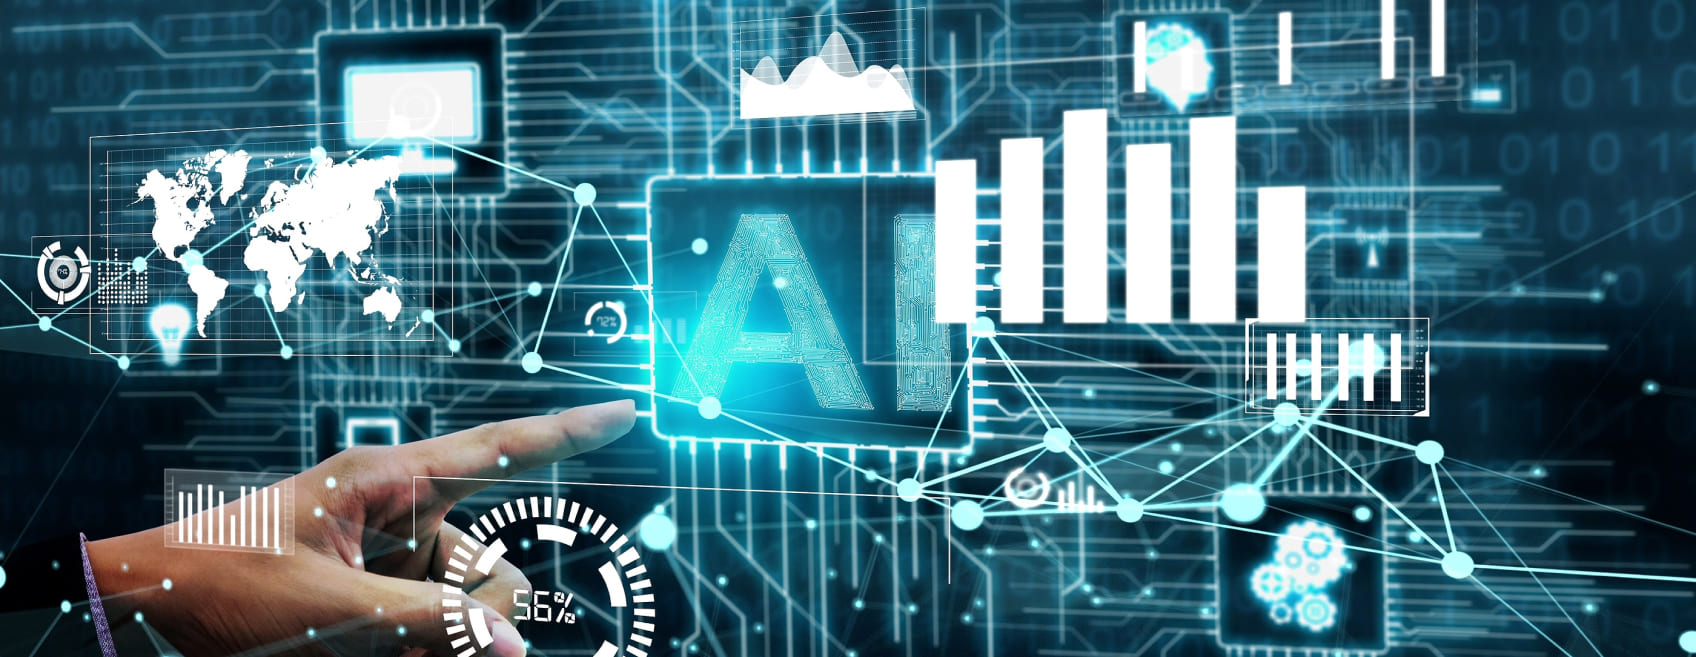 Imagem azul com gráficos genéricos e ilustrativos ao redor da sigla "AI" mostrando big data e machine learning